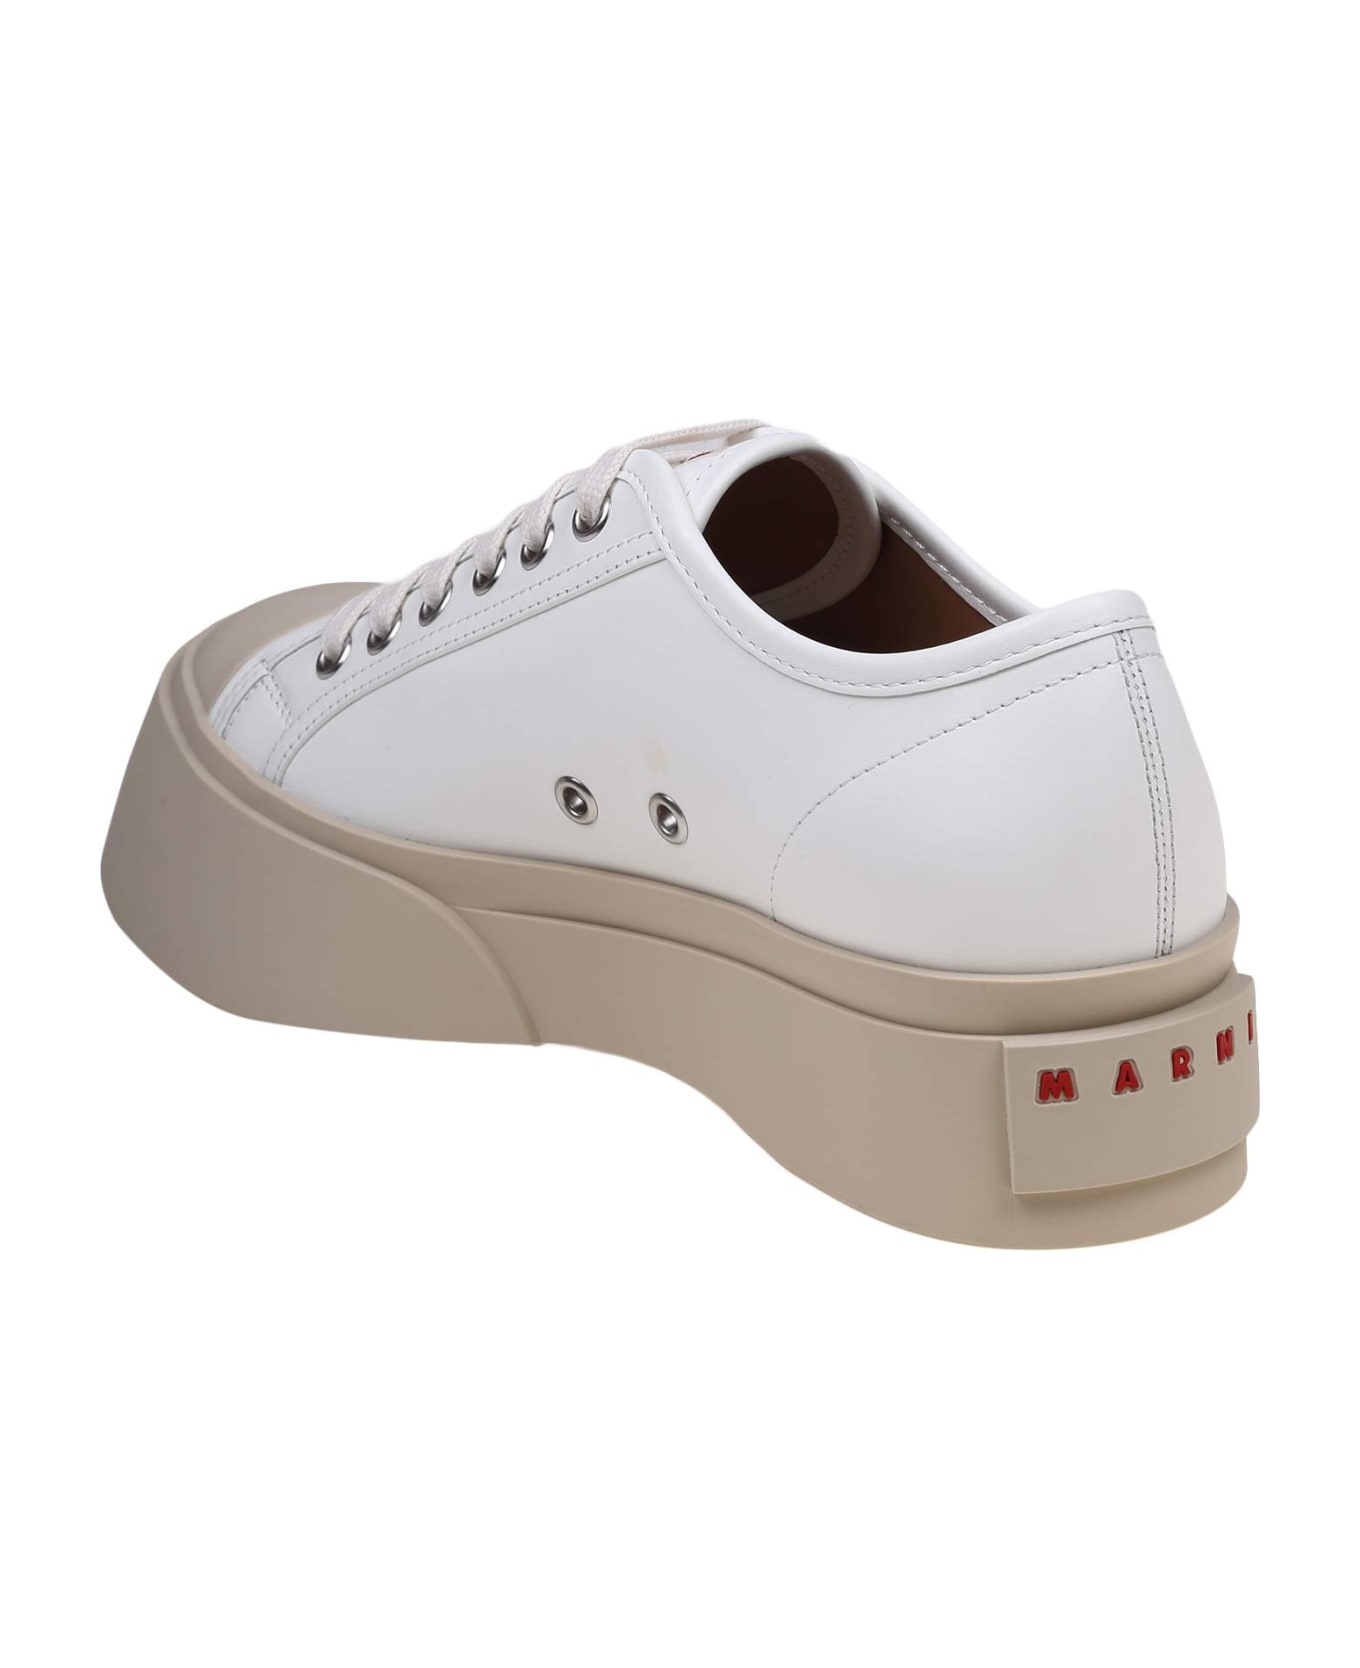 Marni Pablo Sneakers In White Nappa - WHITE